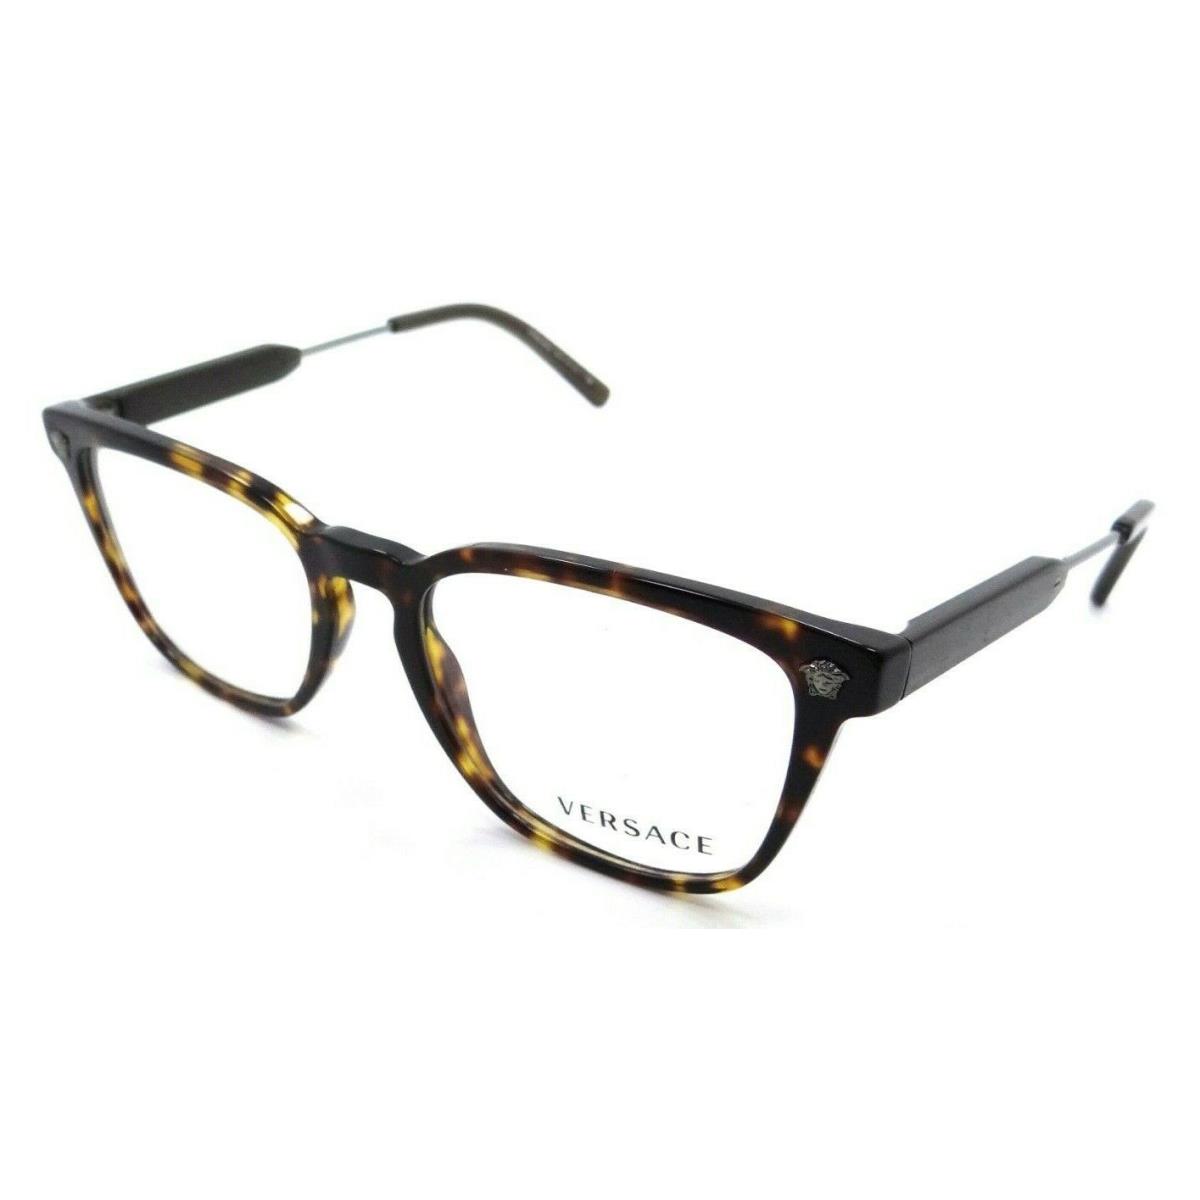 Versace Eyeglasses Frames VE 3290 5337 52-18-140 Havana Made in Italy